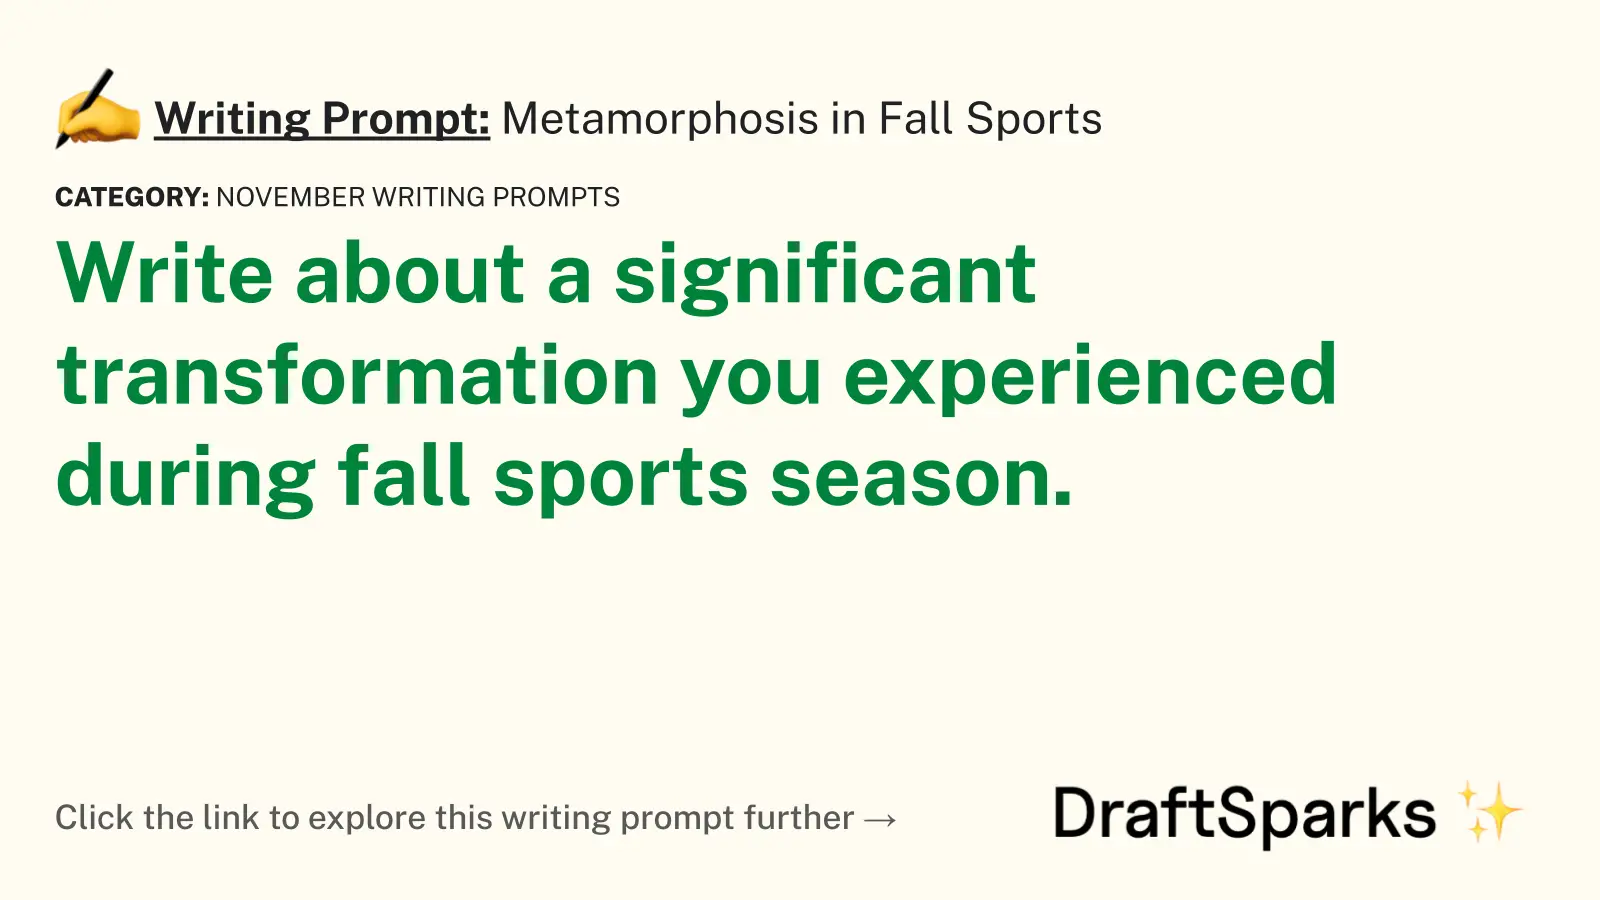 Metamorphosis in Fall Sports